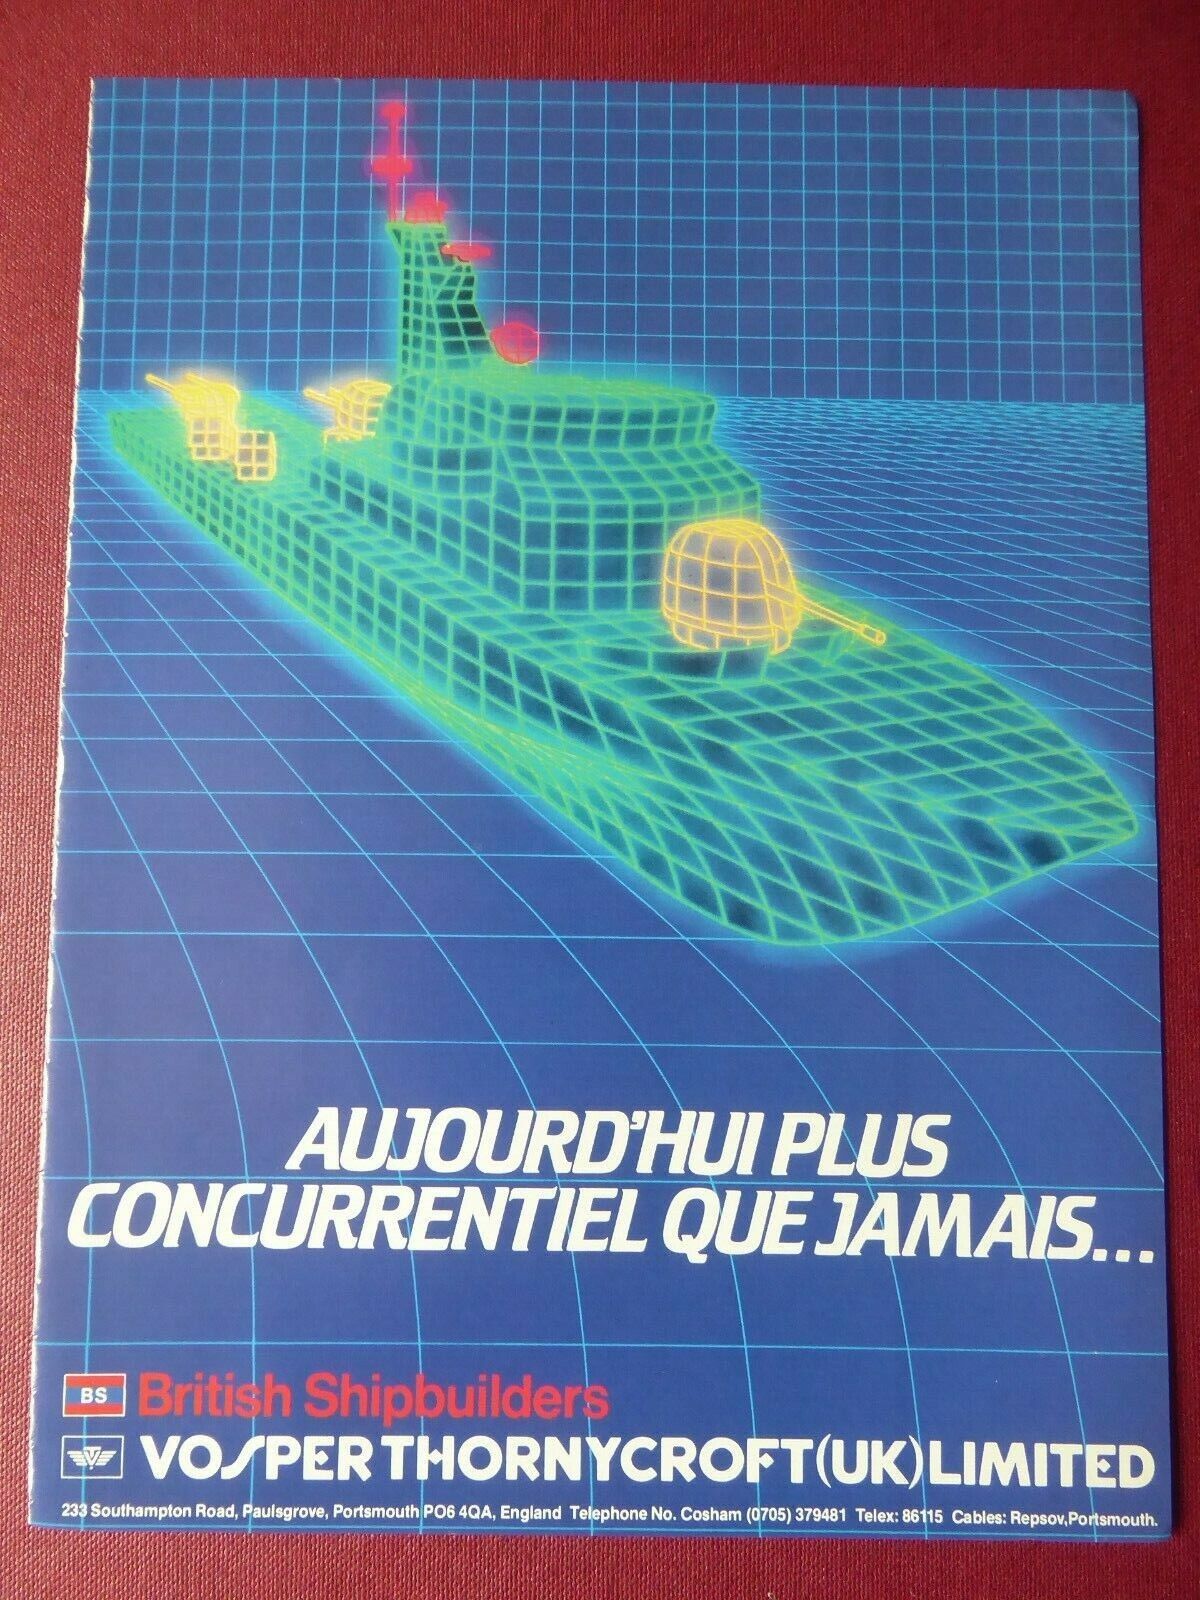 2/1984 PUB VOSPER THORNYCROFT BRITISH SHIPBUILDERS WARSHIP ORIGINAL AD